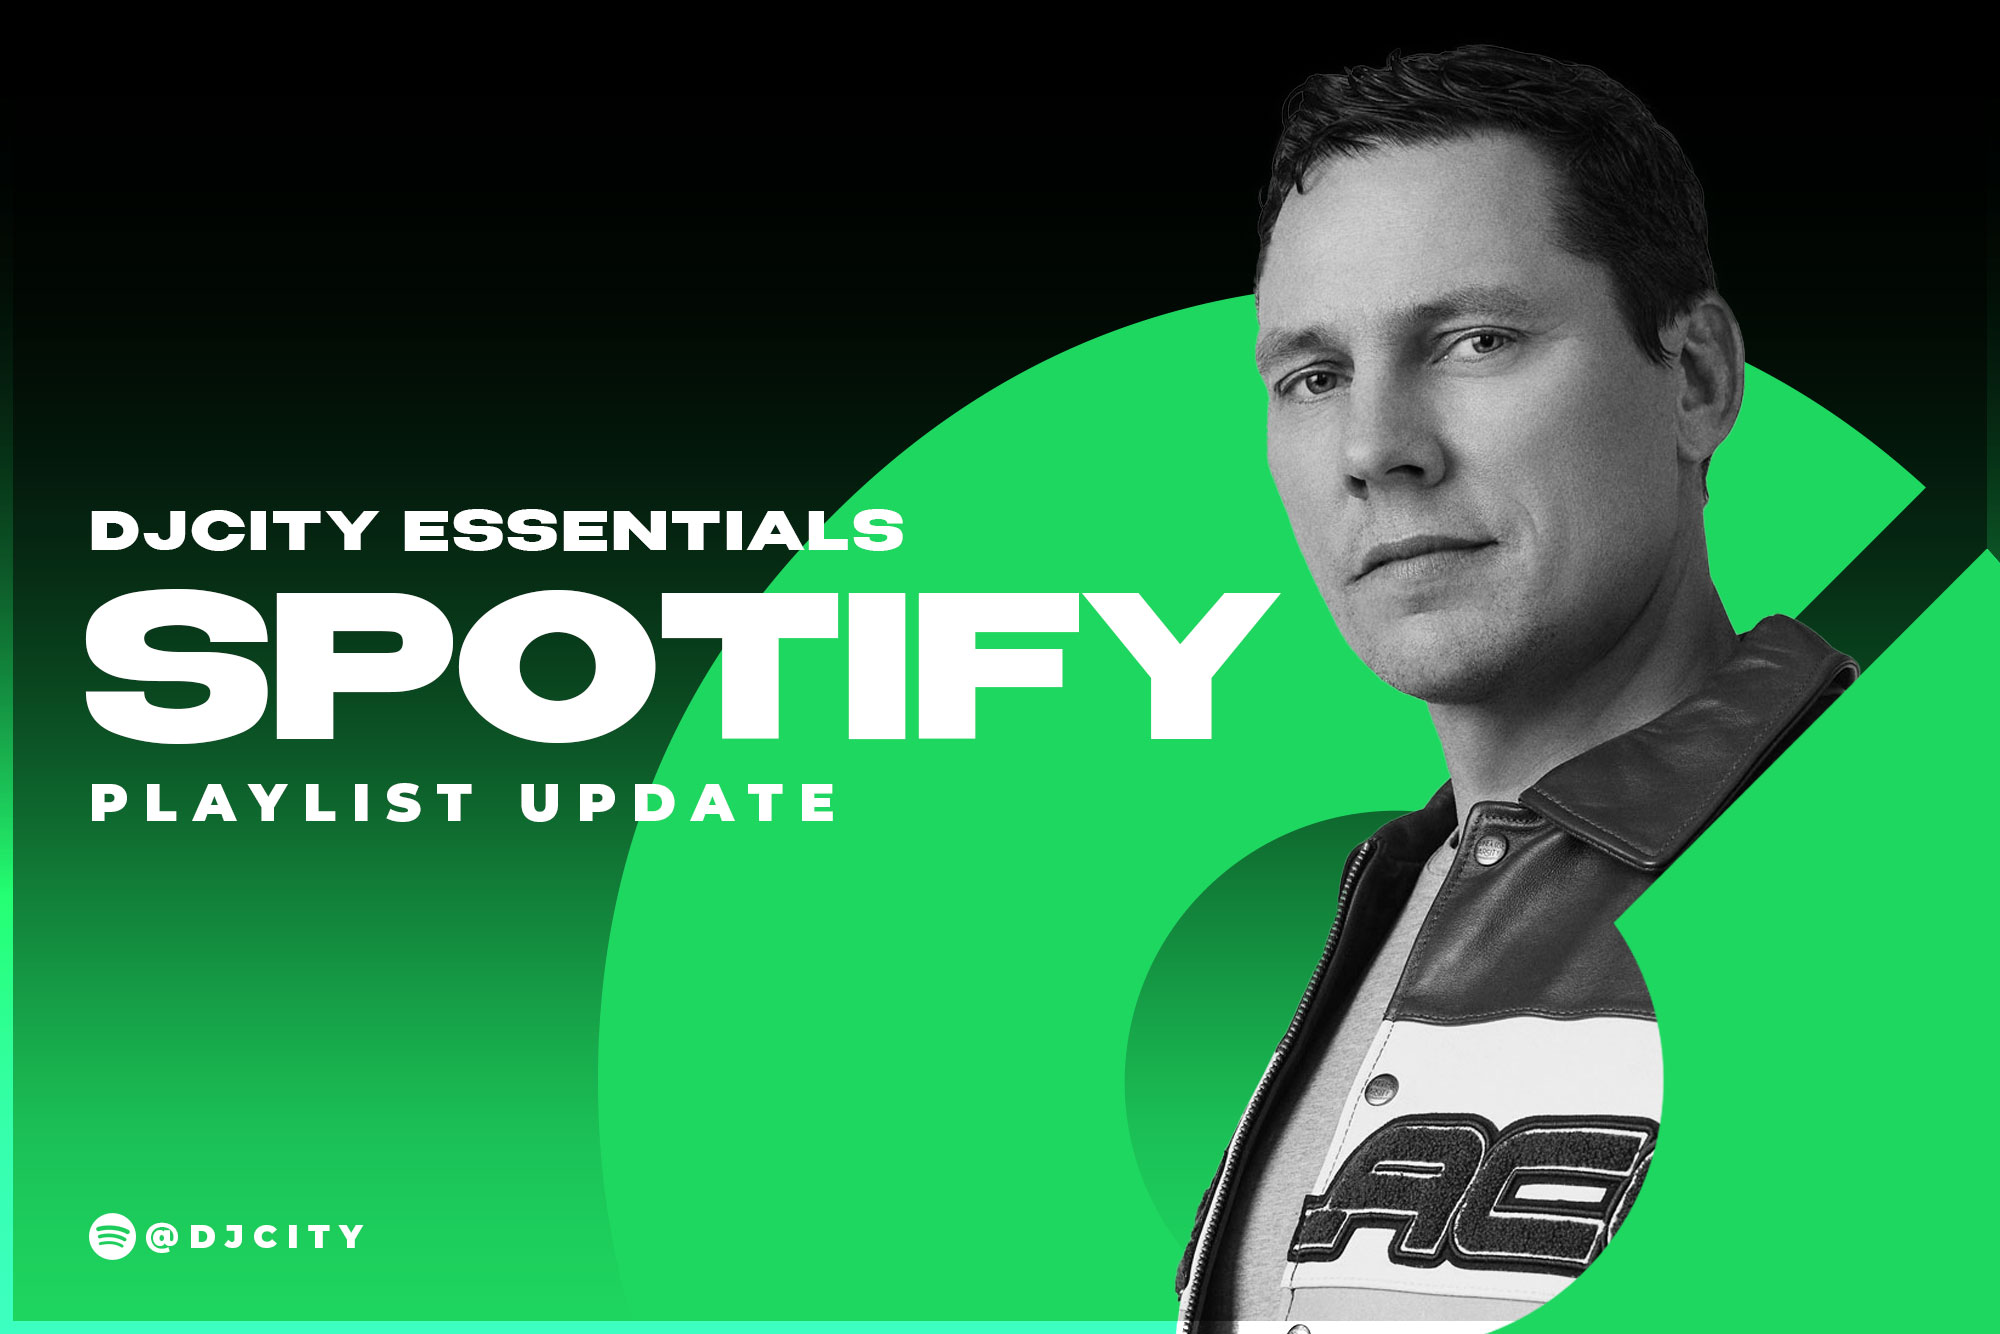 DJcity’s Spotify Playlist Update: Apr. 20